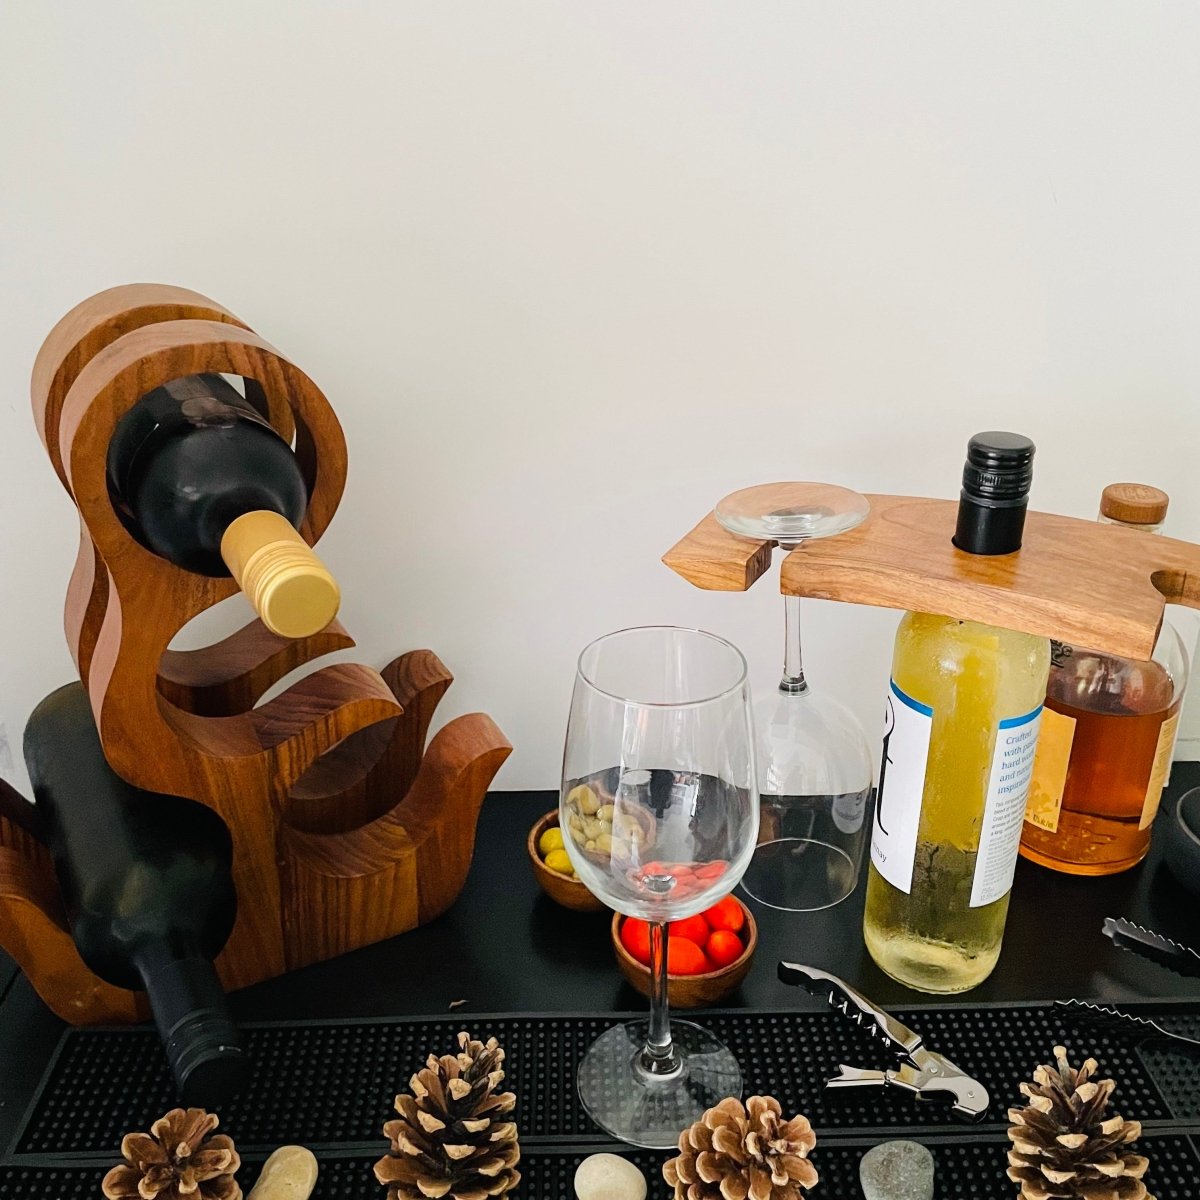 Wine Bottle Stand for 2 Glasses - Aesthetic Living